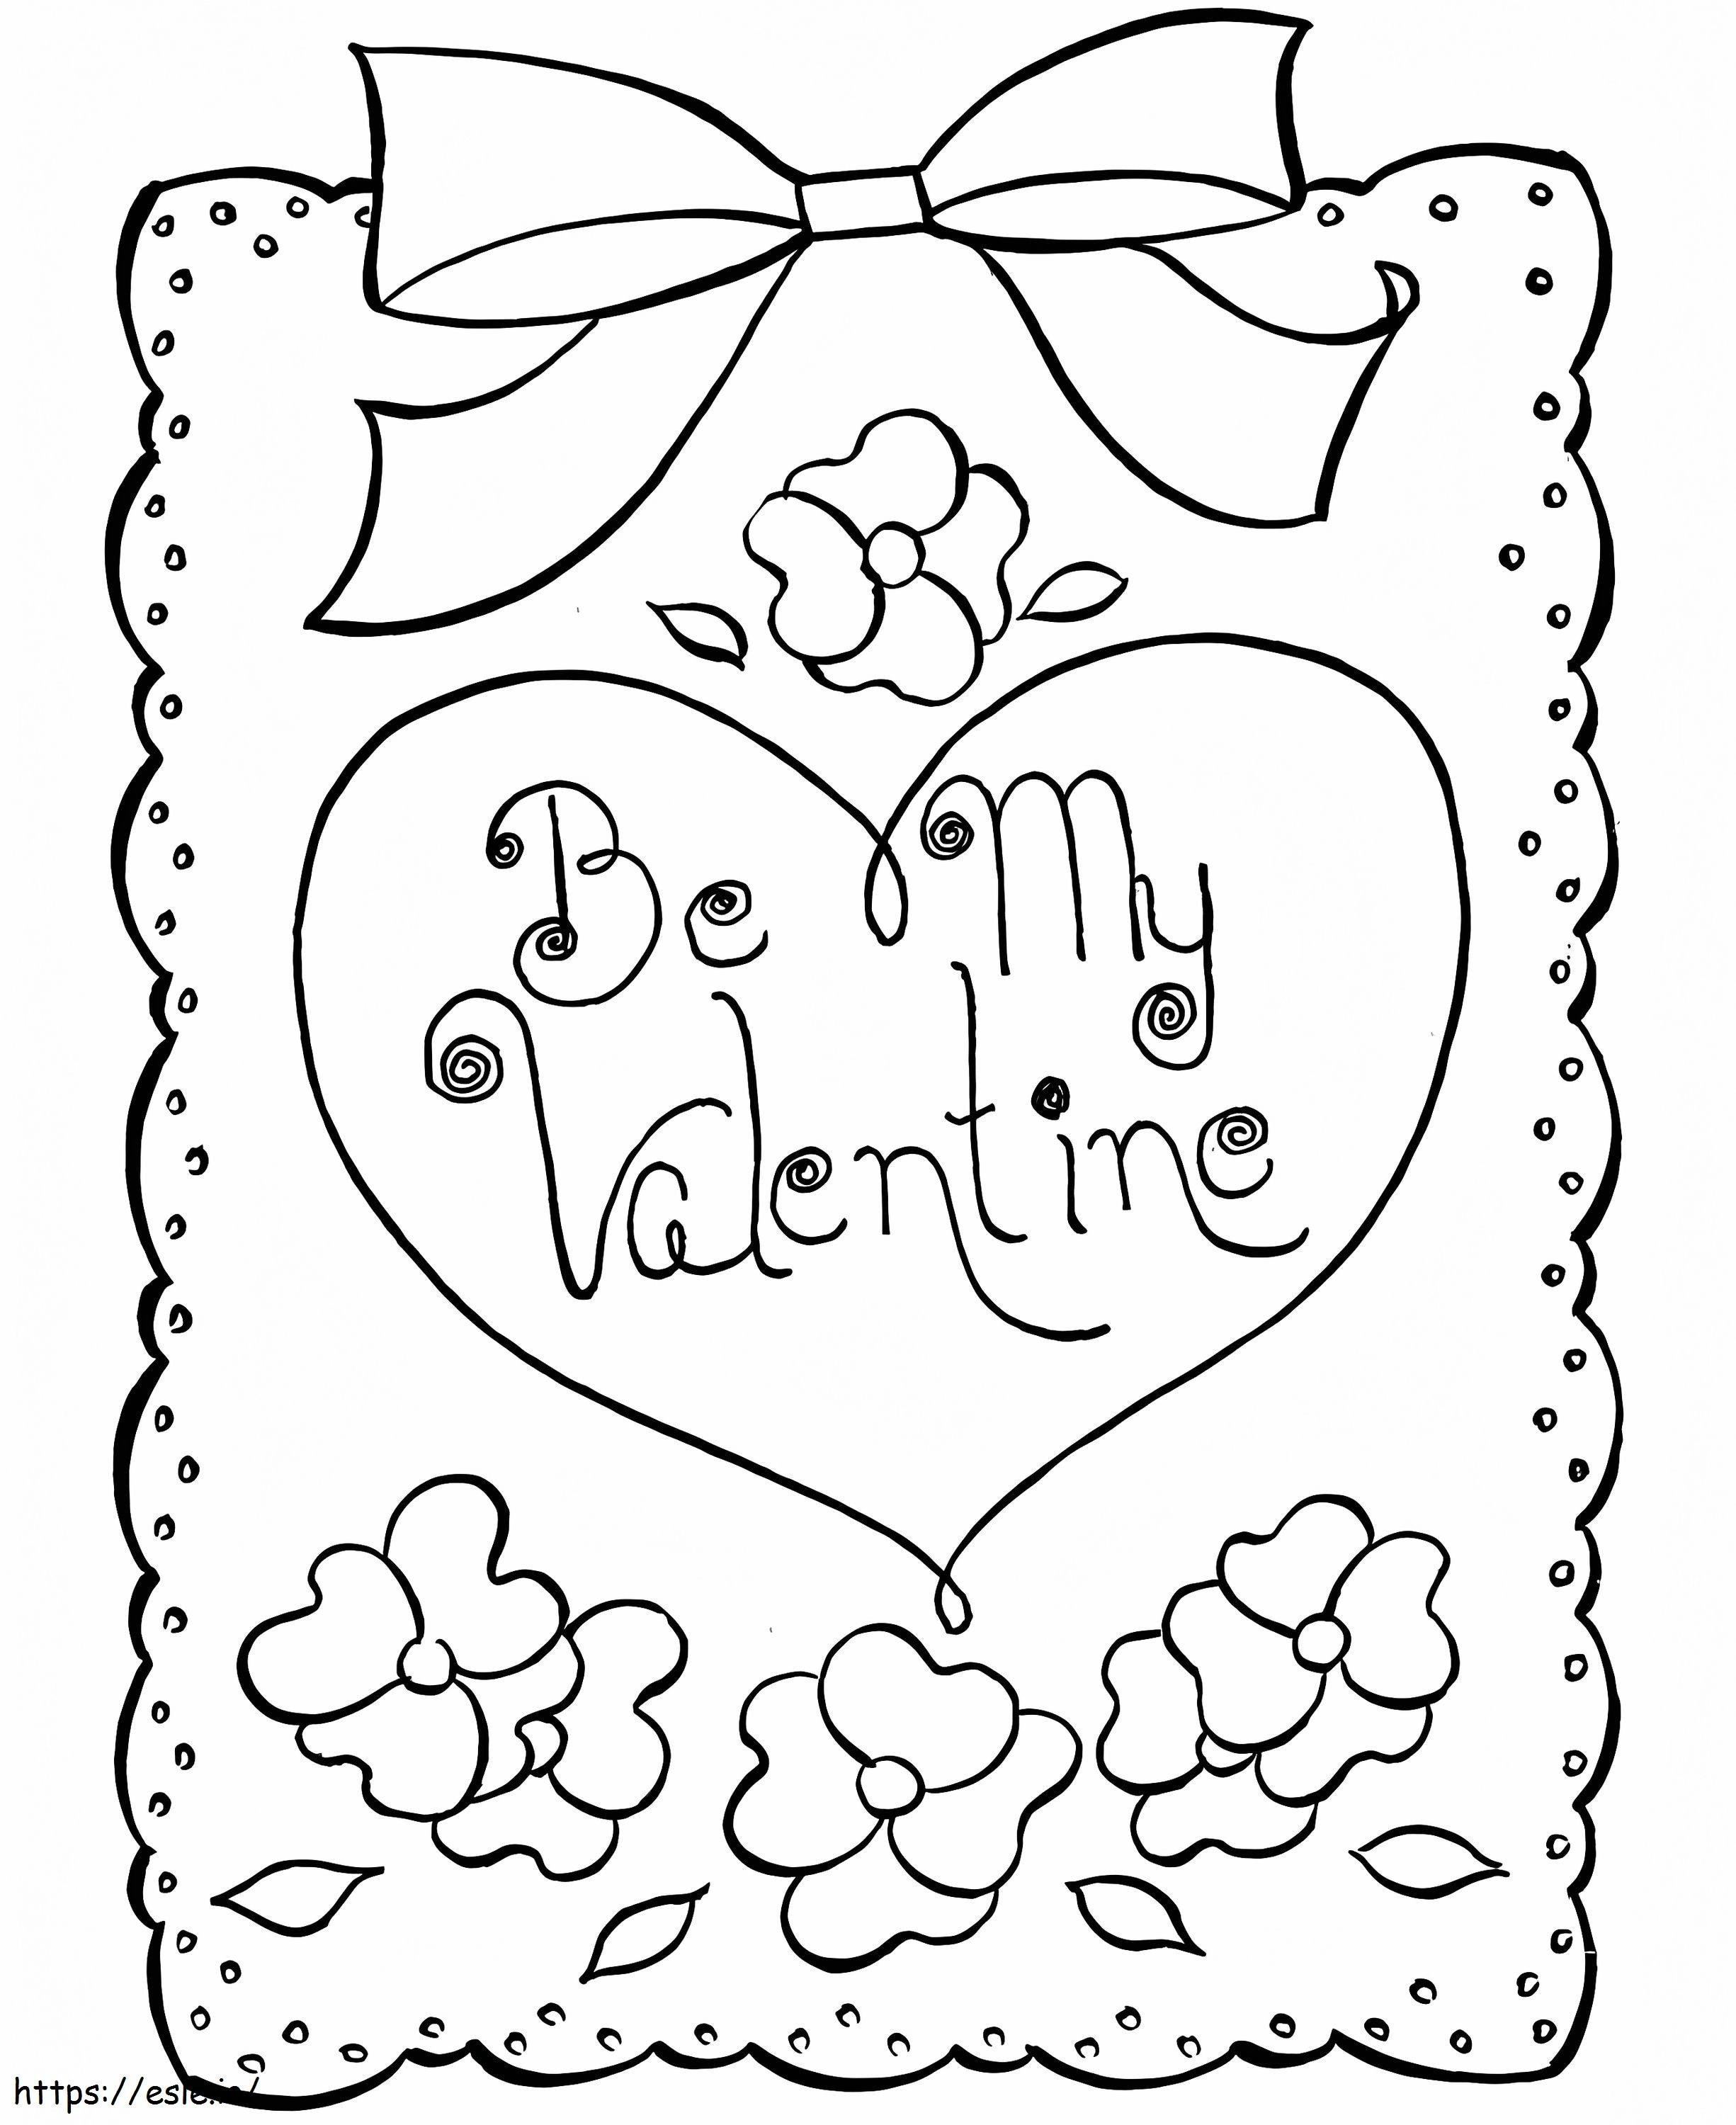 Cartão de Dia dos Namorados para impressão grátis para colorir